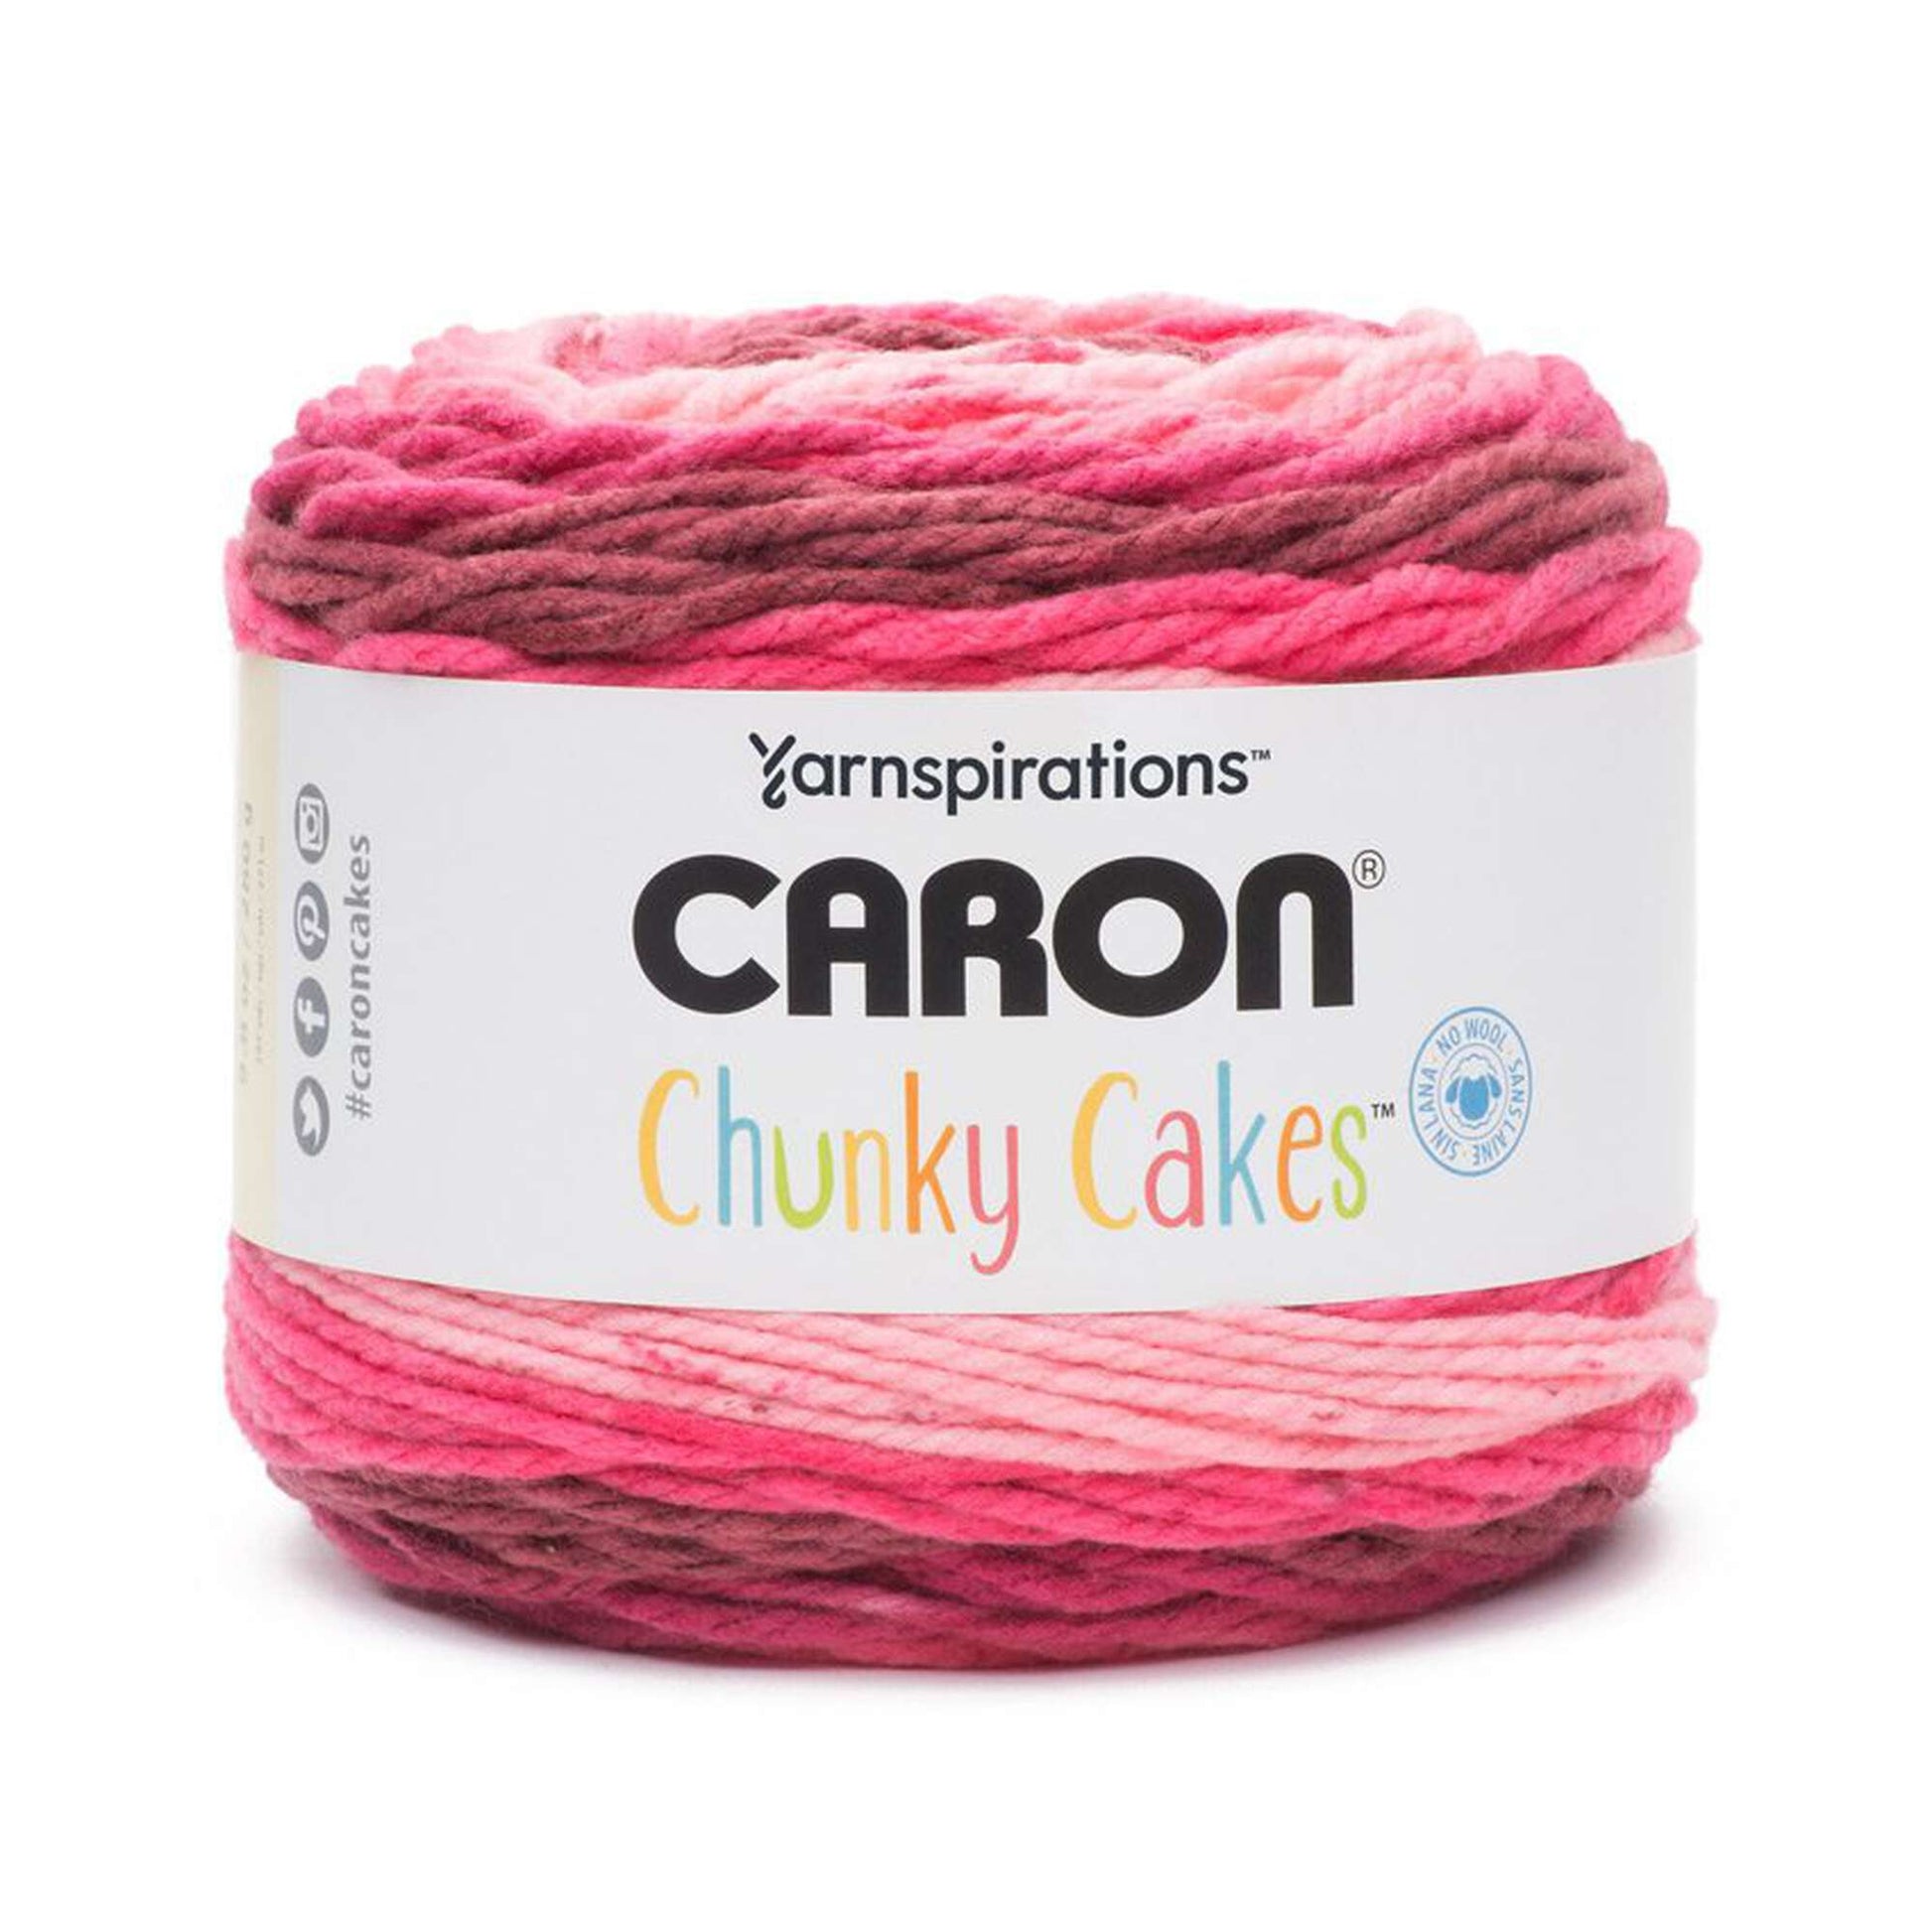 Caron Chunky Cakes Yarn - Clearance Shades